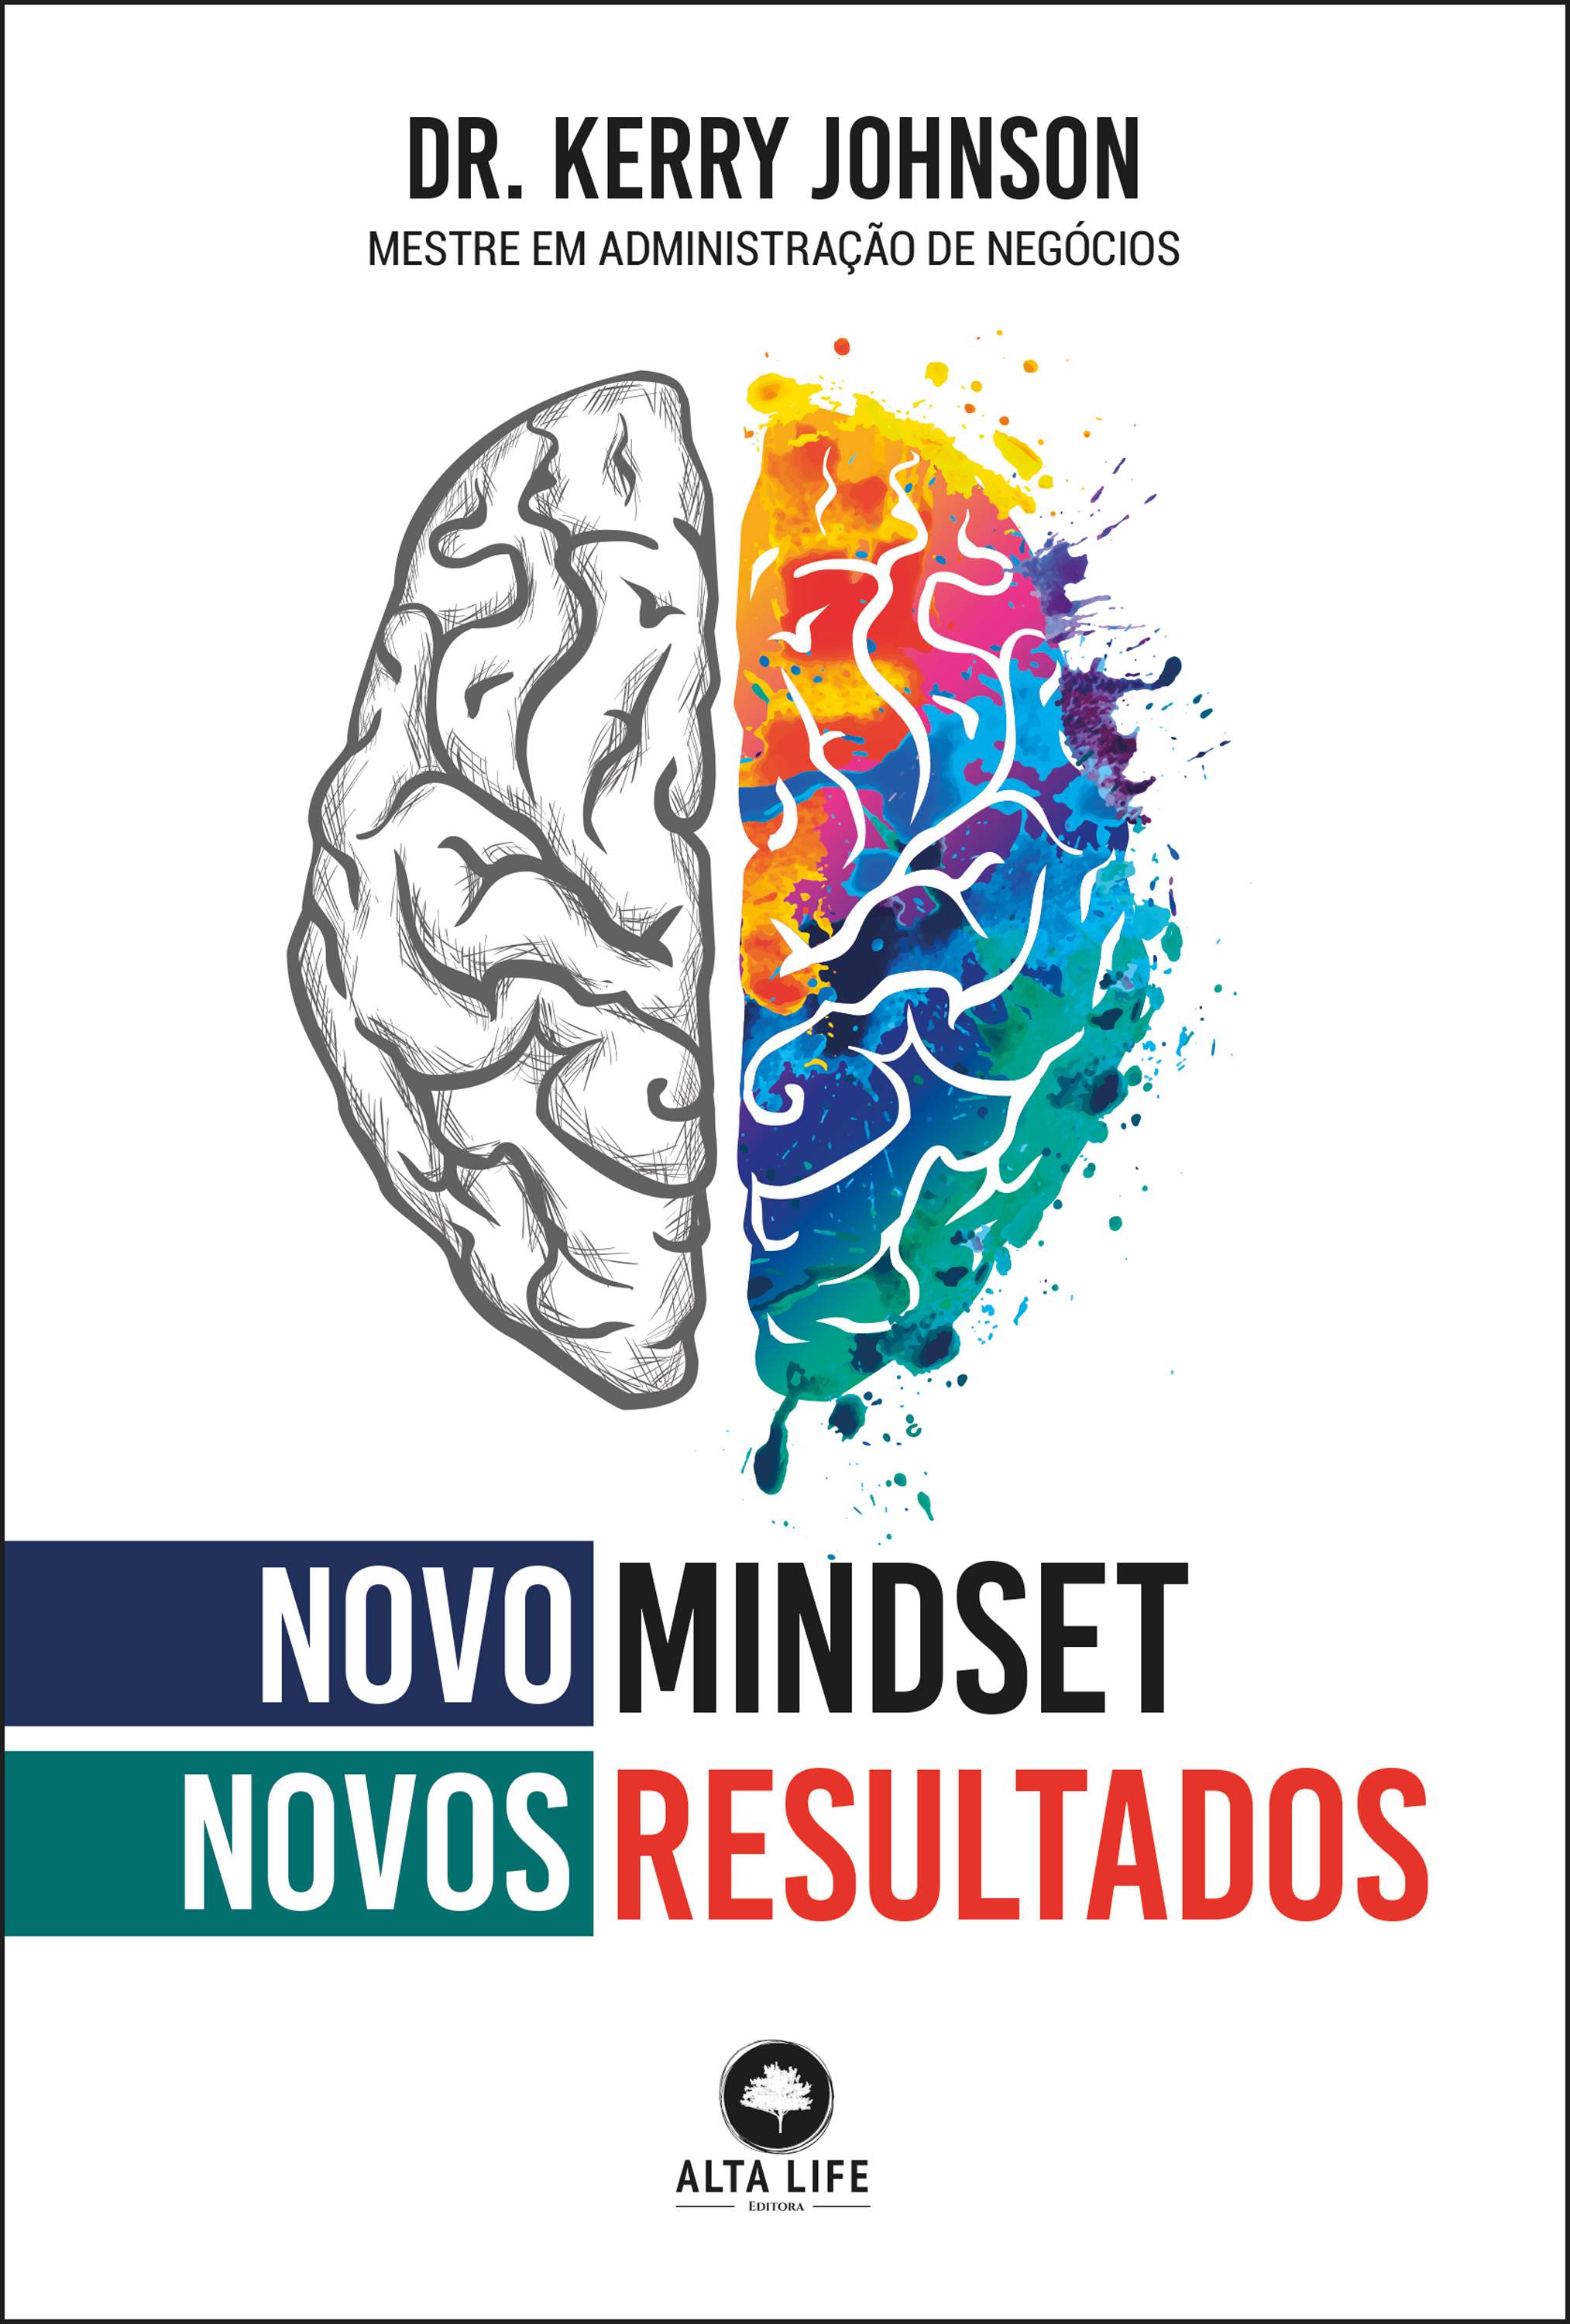 Novo mindset, novos resultados